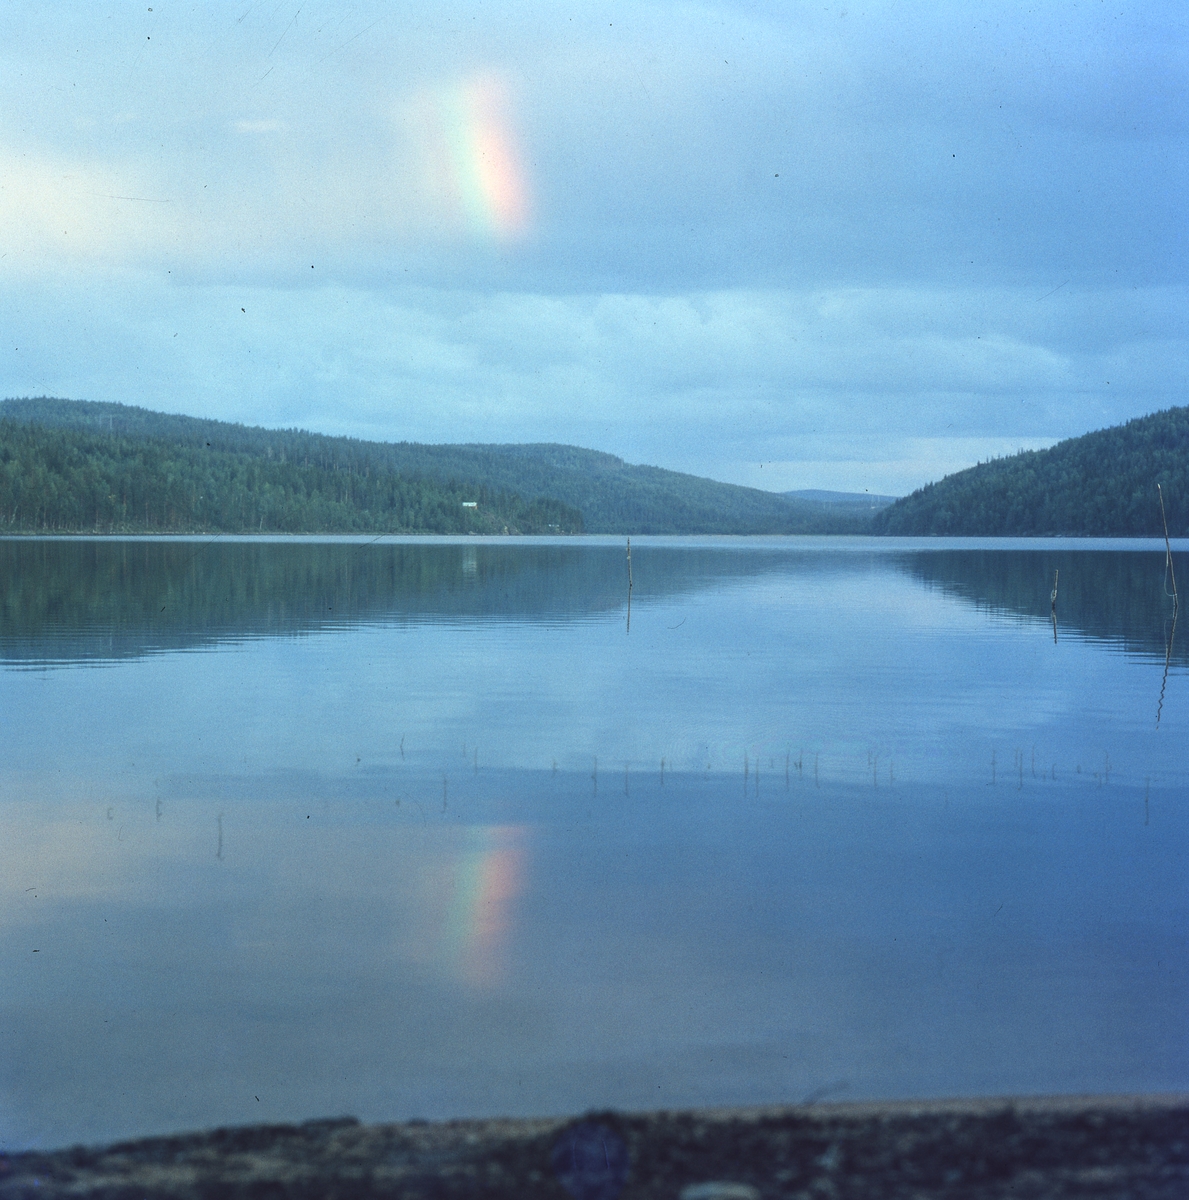 Ljusfenomen på himlen som speglar sig på sjön Ängratörns yta.